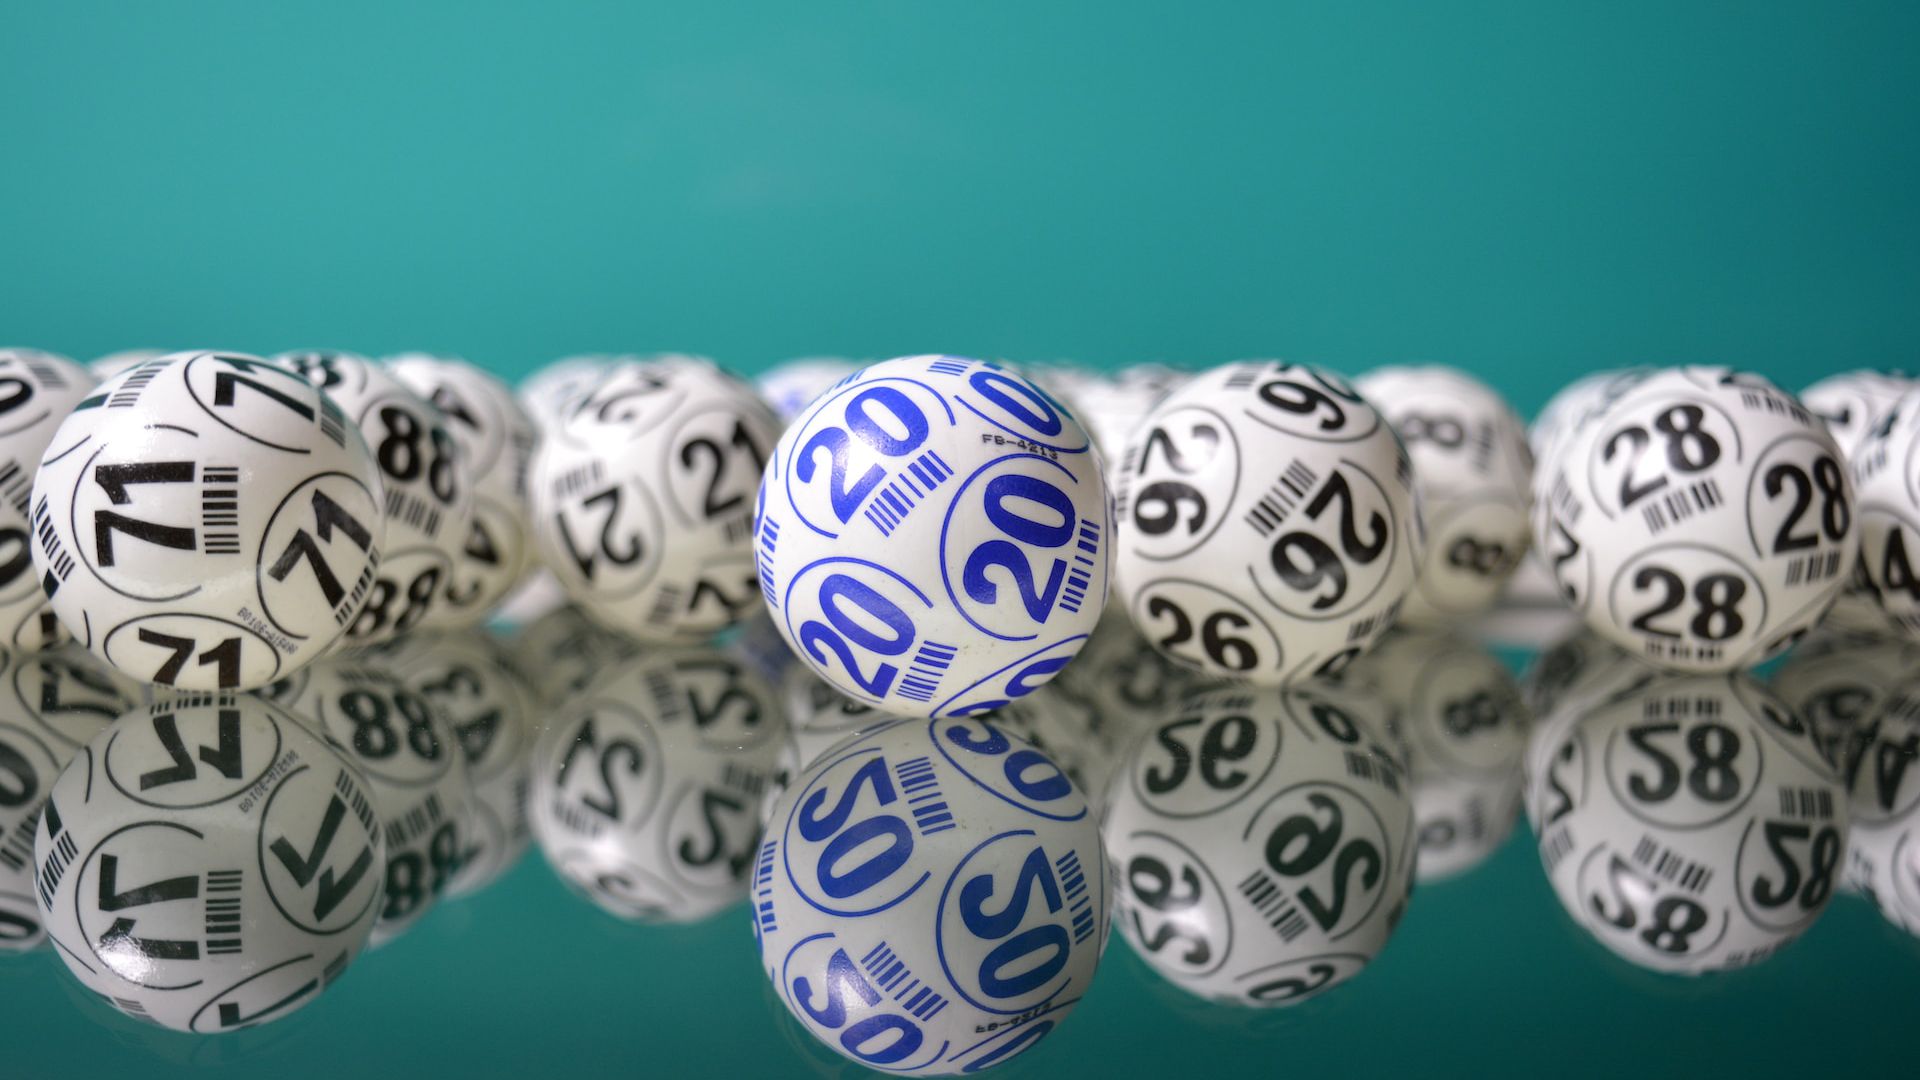 Loterias Online Da Caixa - como apostar nas loterias da Caixa pela internet  